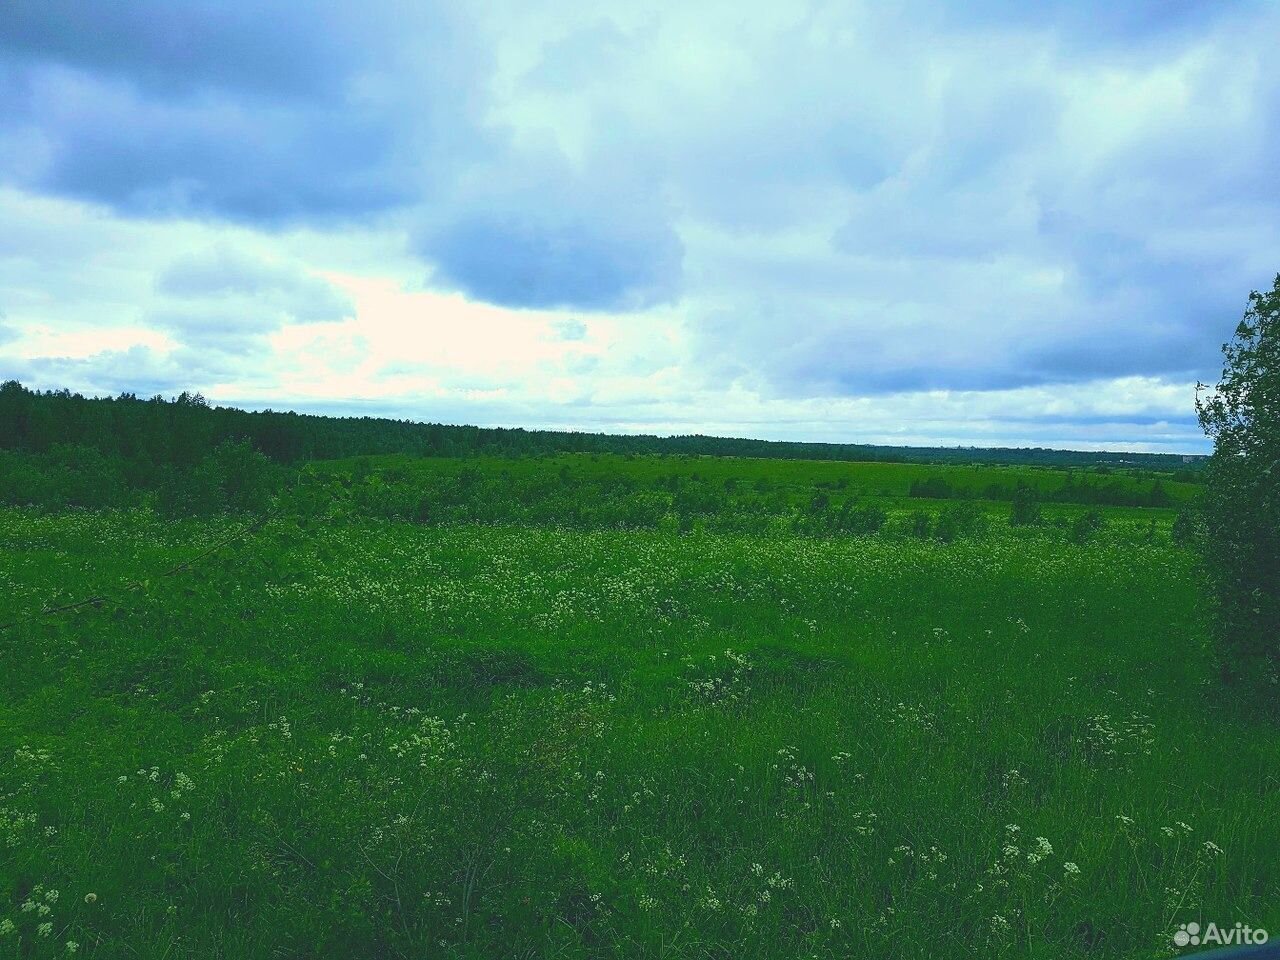 Сельскохозяйственные земли Вологодская область. Красивые поля в Череповецком районе. Купить земельные в вологодской